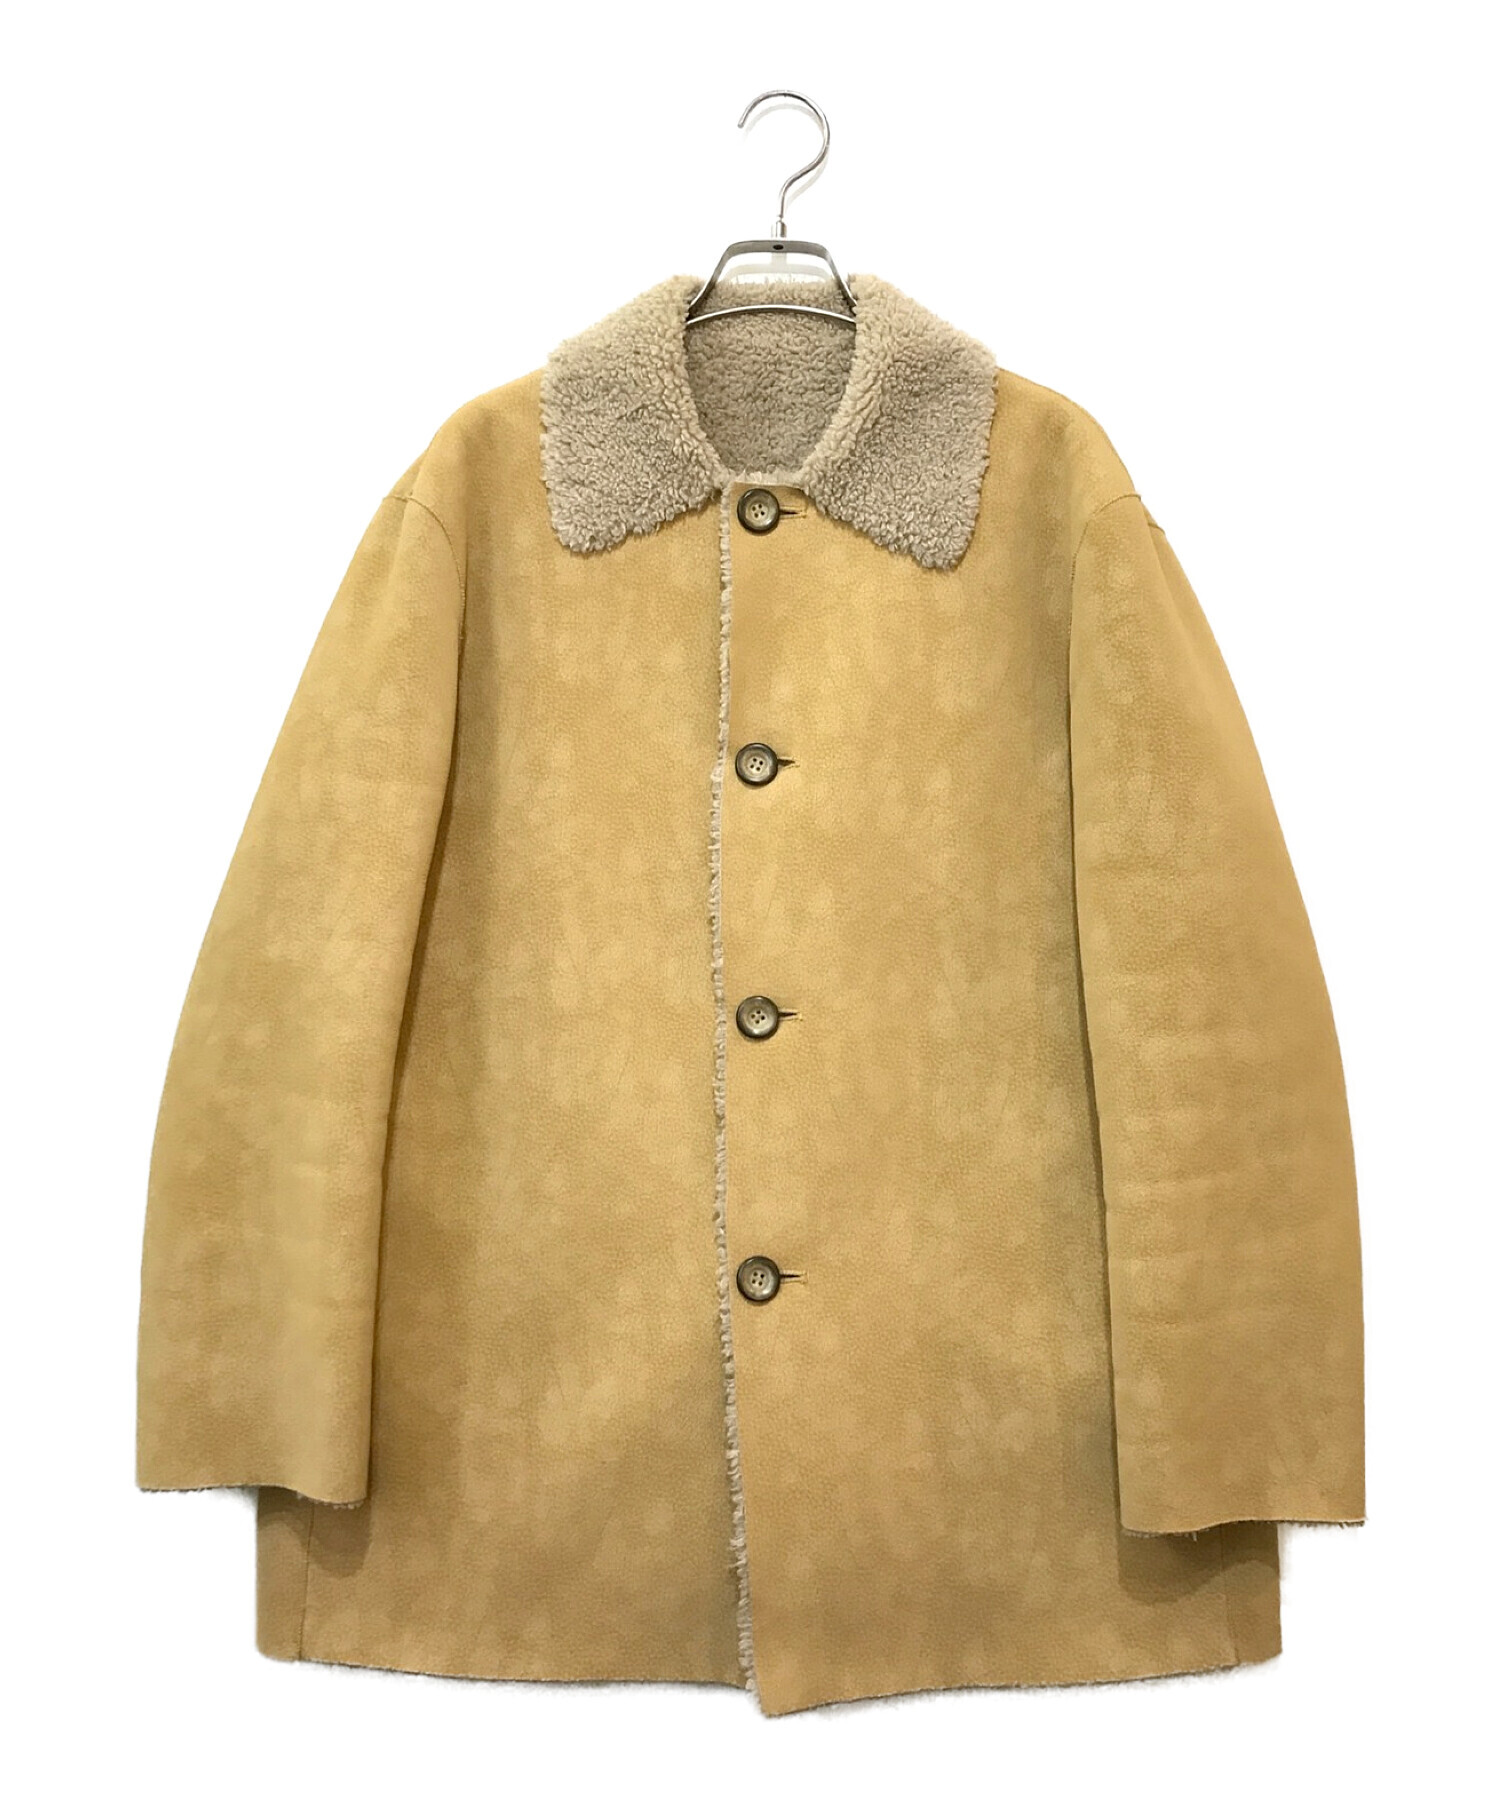 15,840円perverze double face suede jacket